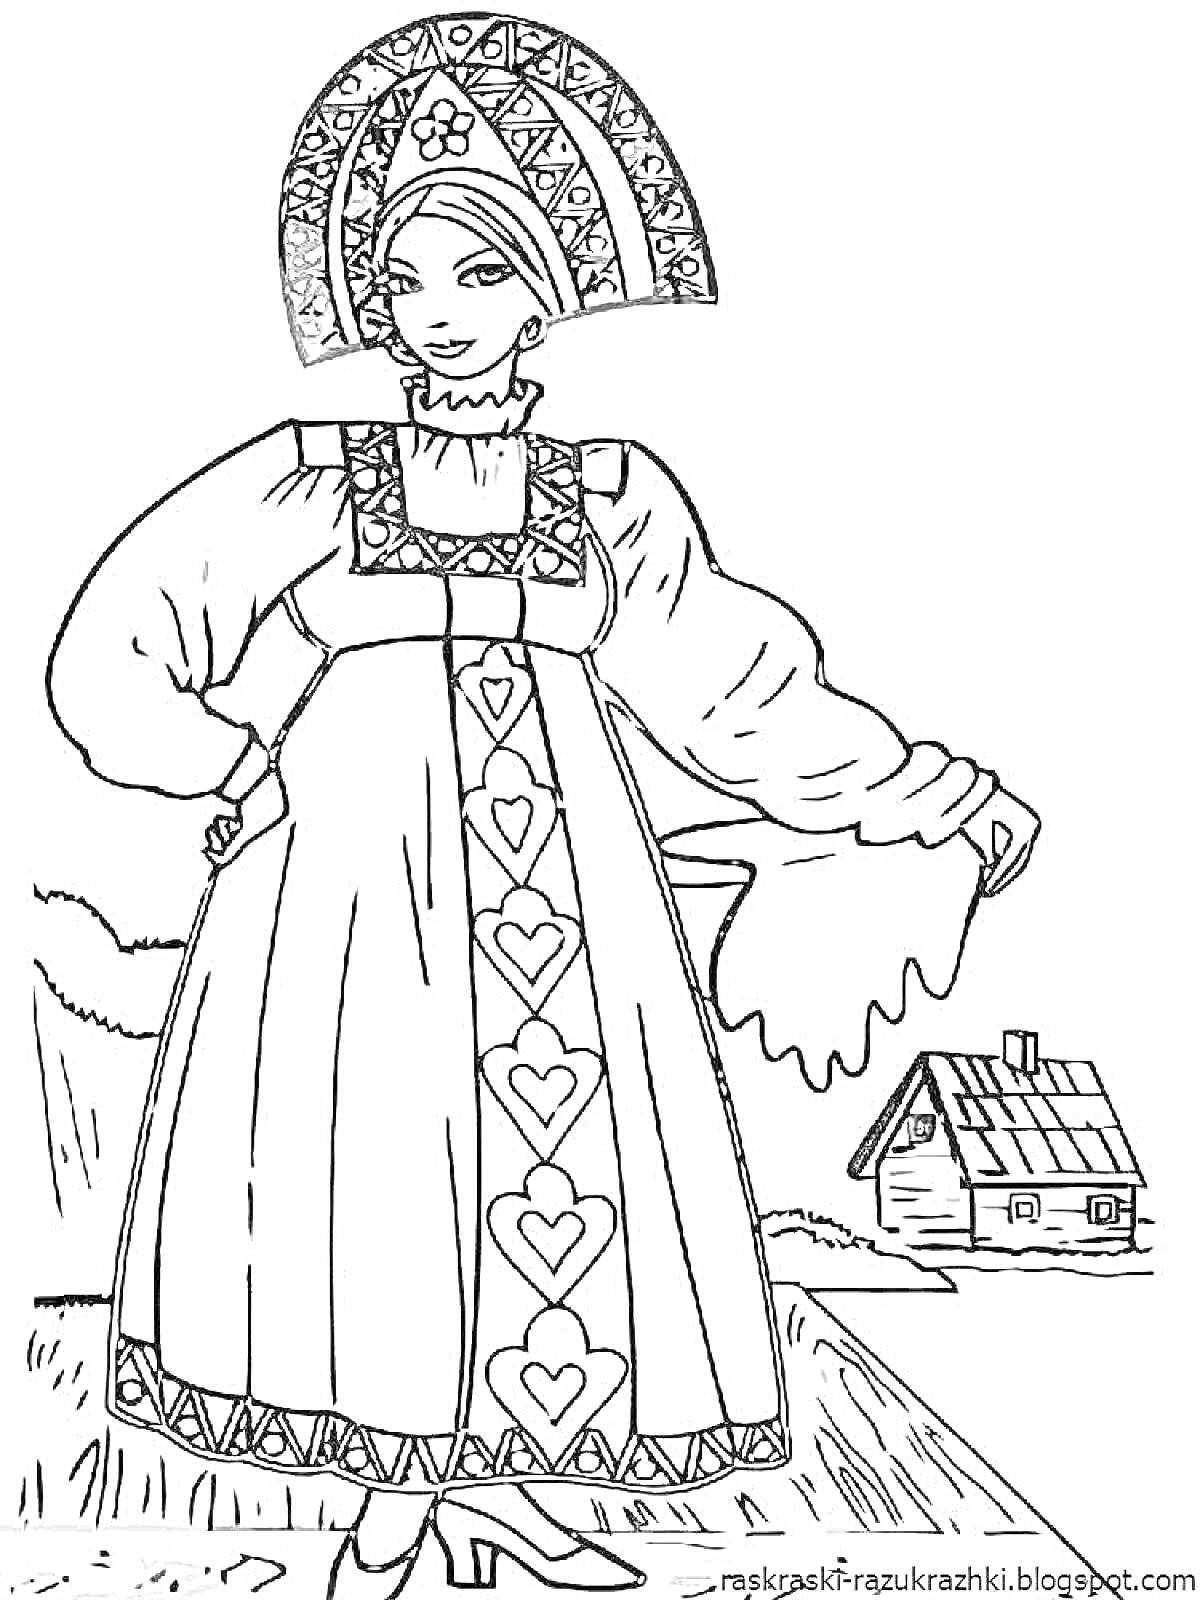 Раскраска Девушка в русском народном костюме с кокошником, сарафаном с узором из сердец и рубахой с рукавами-фонариками, на фоне деревенского домика.